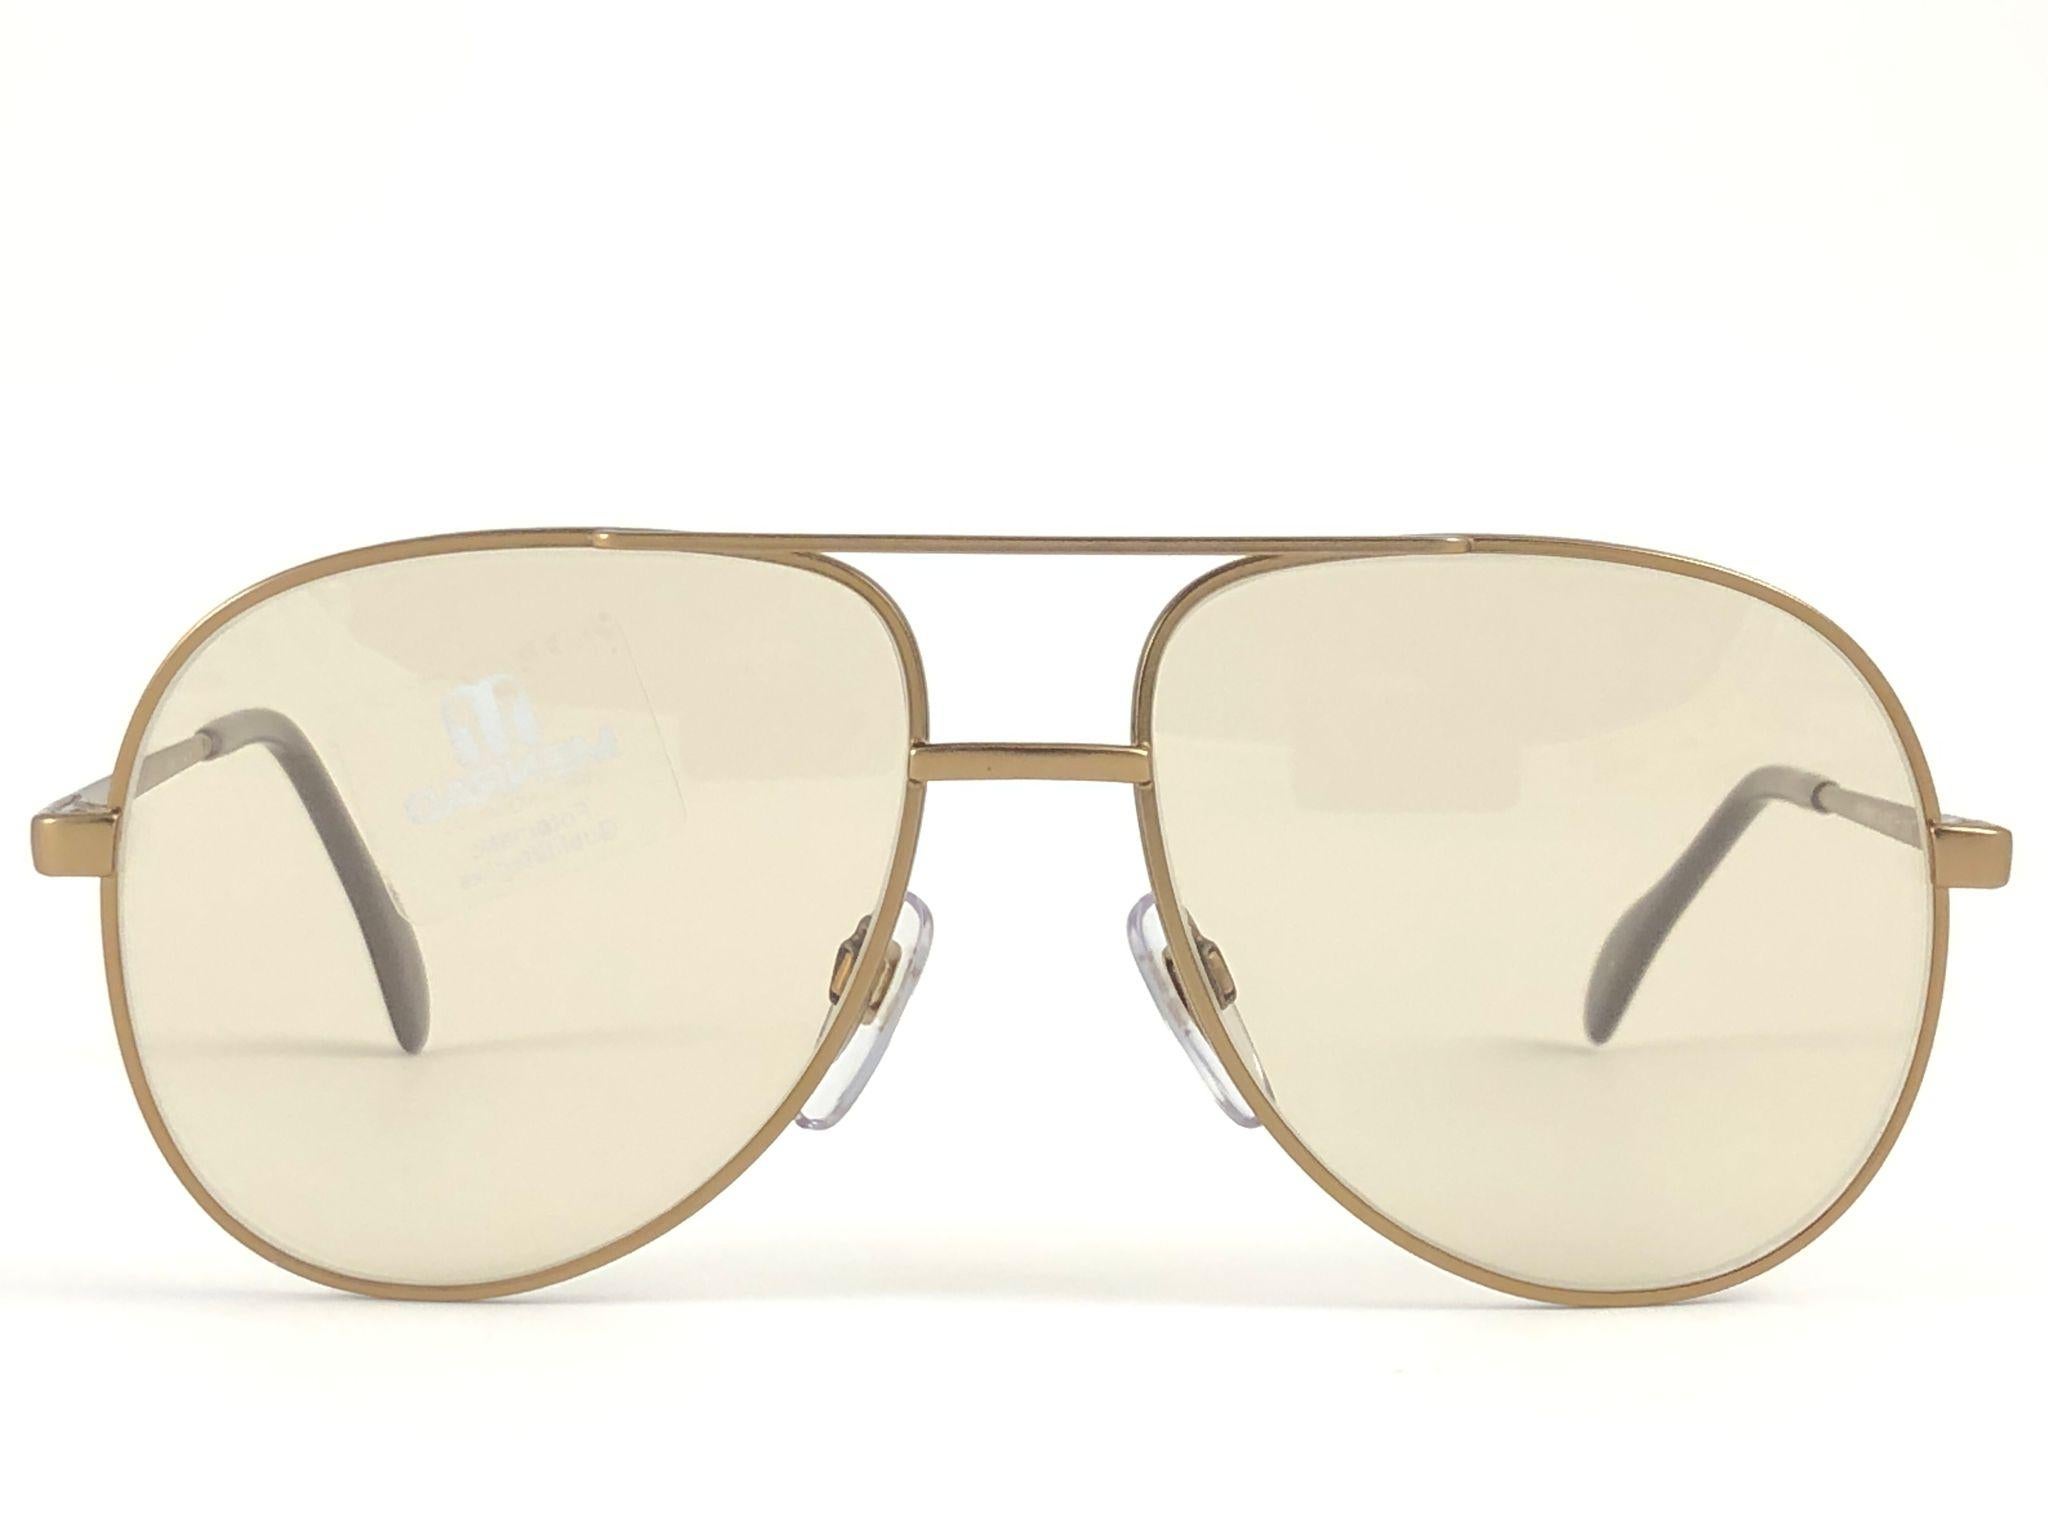 New Vintage Collector Item Menrad Sunglasses frame holding a pair of light  les lentilles.  

Fabriqué en Allemagne dans les années 1970.


Devant : 14,2 cm 

Hauteur de l'objectif : 5.1 cm 

Largeur de l'objectif : 5.6 cm 

Temples : 12 cm